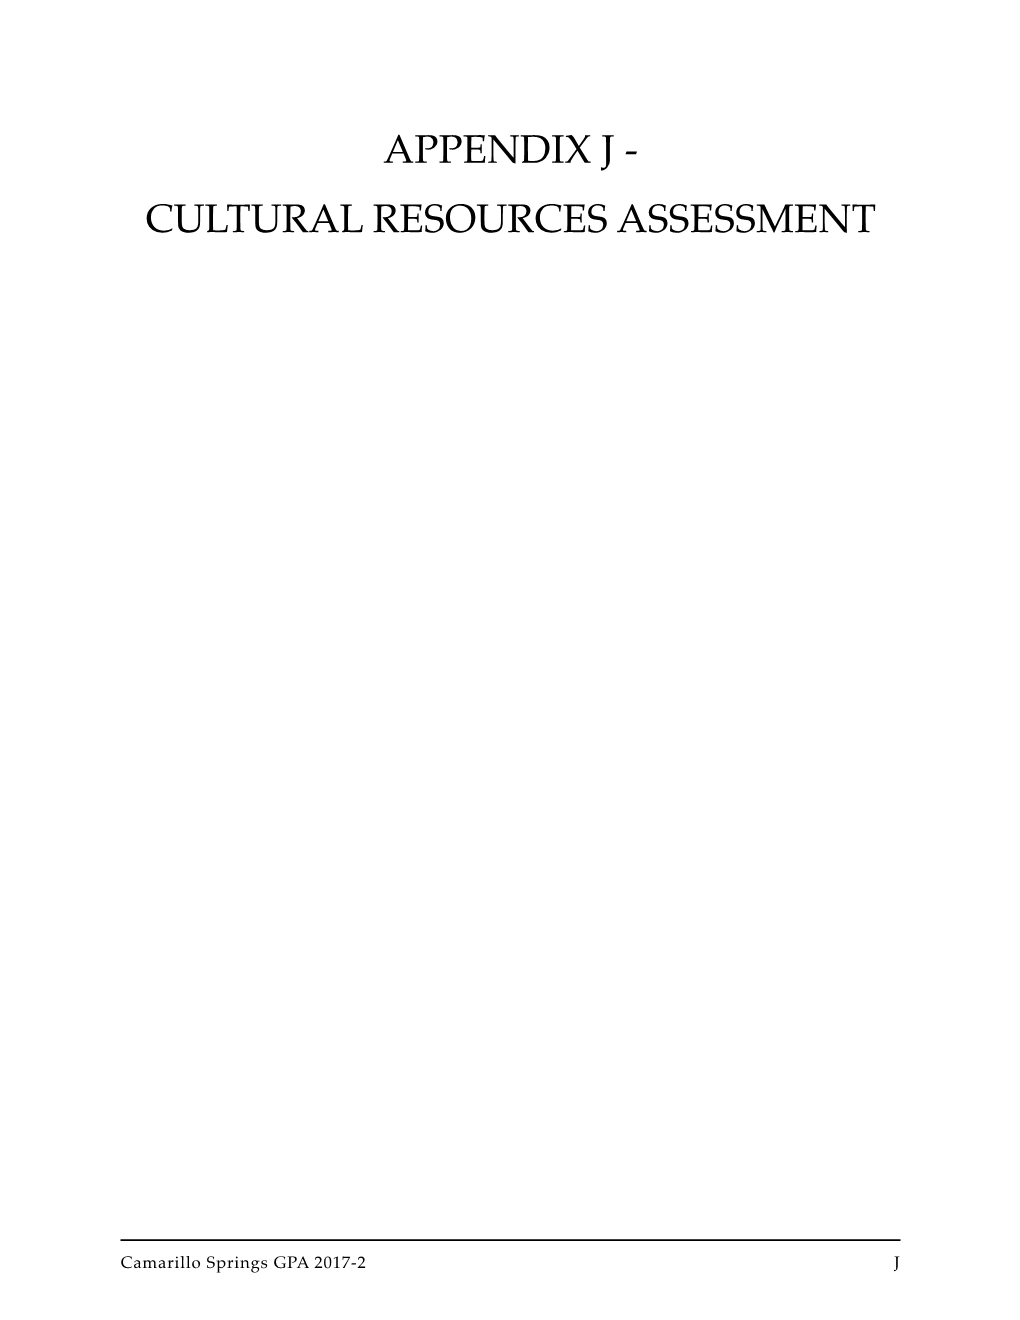 Appendix J - Cultural Resources Assessment